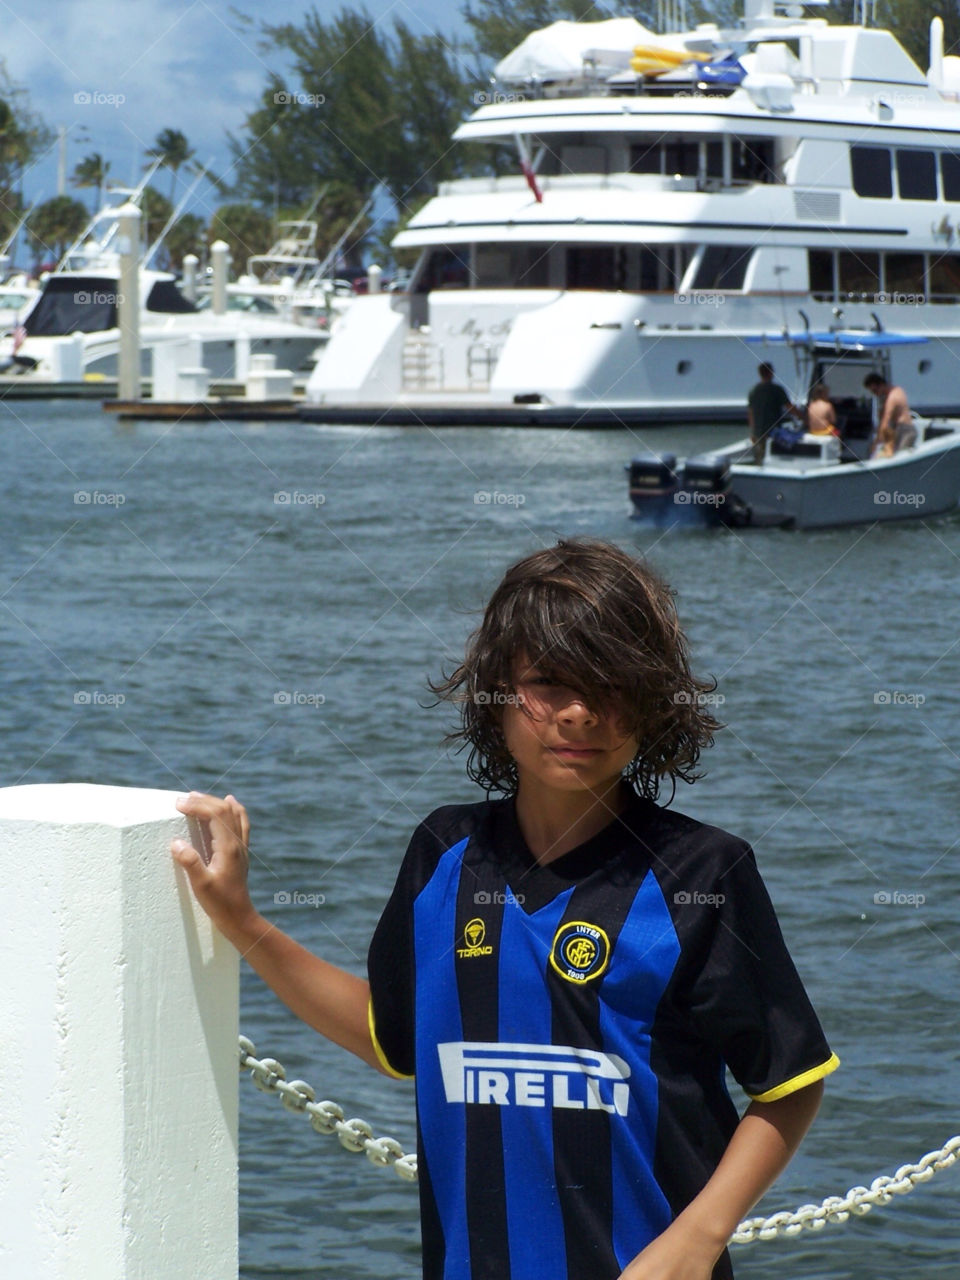 florida kid boy boat by vladimiryleon